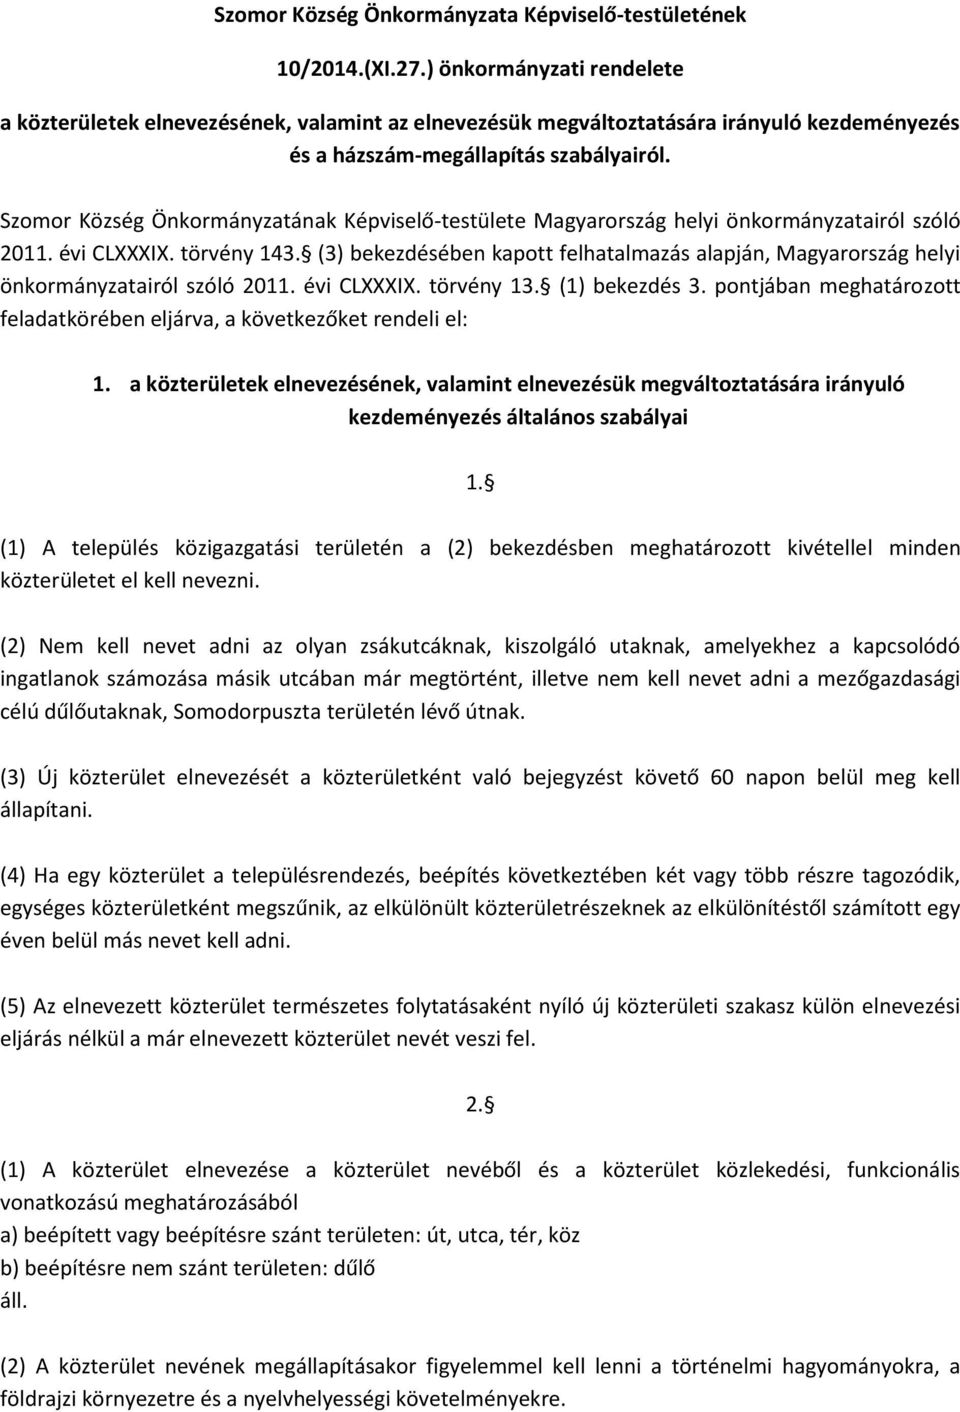 Szomor Község Önkormányzatának Képviselő-testülete Magyarország helyi önkormányzatairól szóló 2011. évi CLXXXIX. törvény 143.